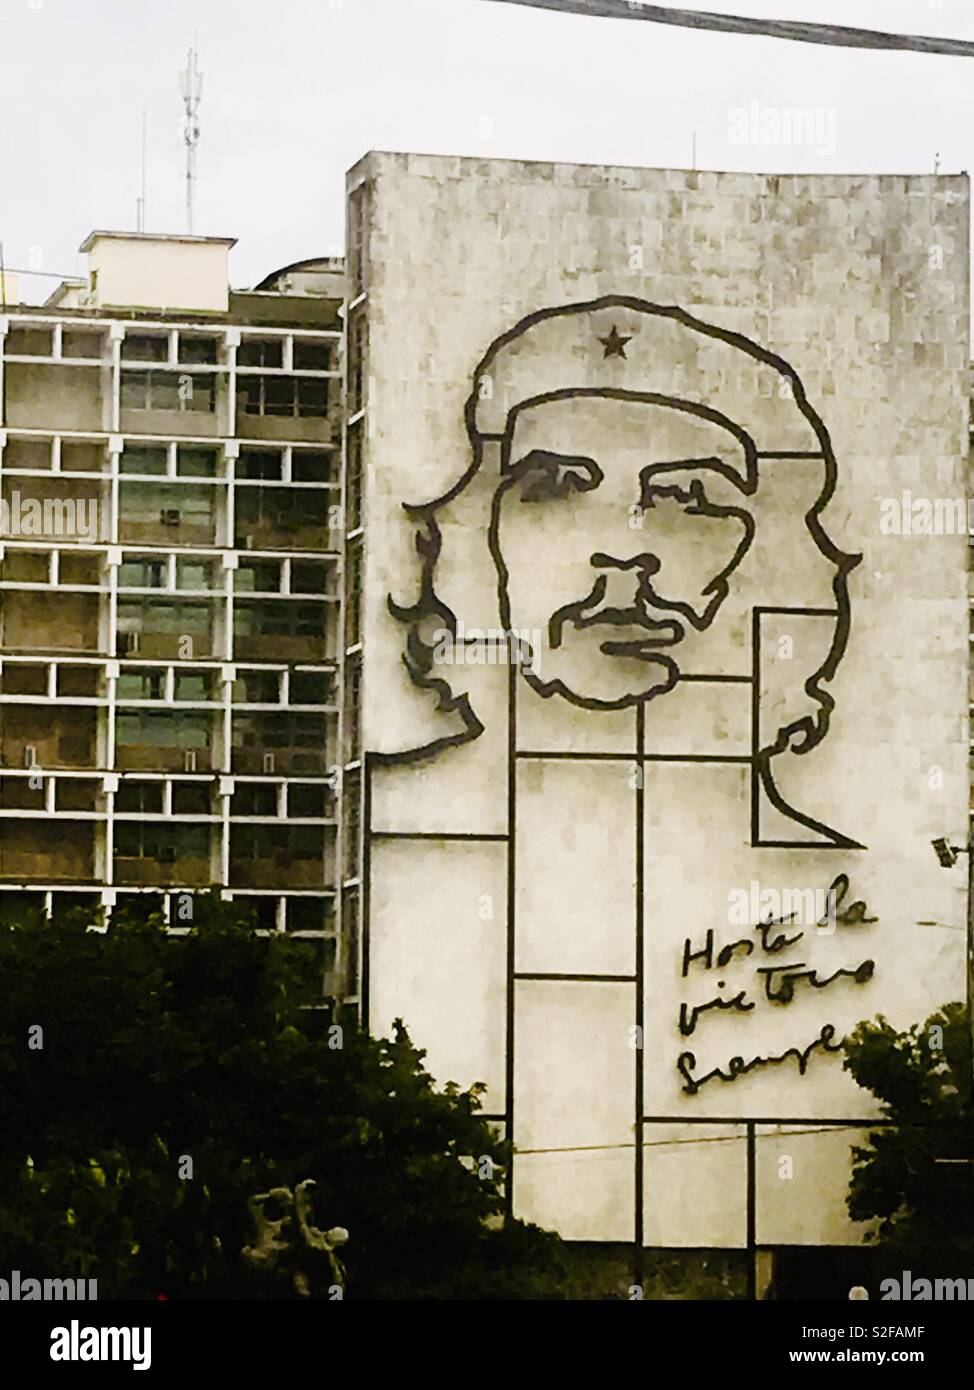 Ernesto Che Guevara face à un bâtiment, un révolutionnaire marxiste, médecin, auteur, chef de guérilla, diplomate et théoricien militaire. Une grande figure de la révolution cubaine. Banque D'Images